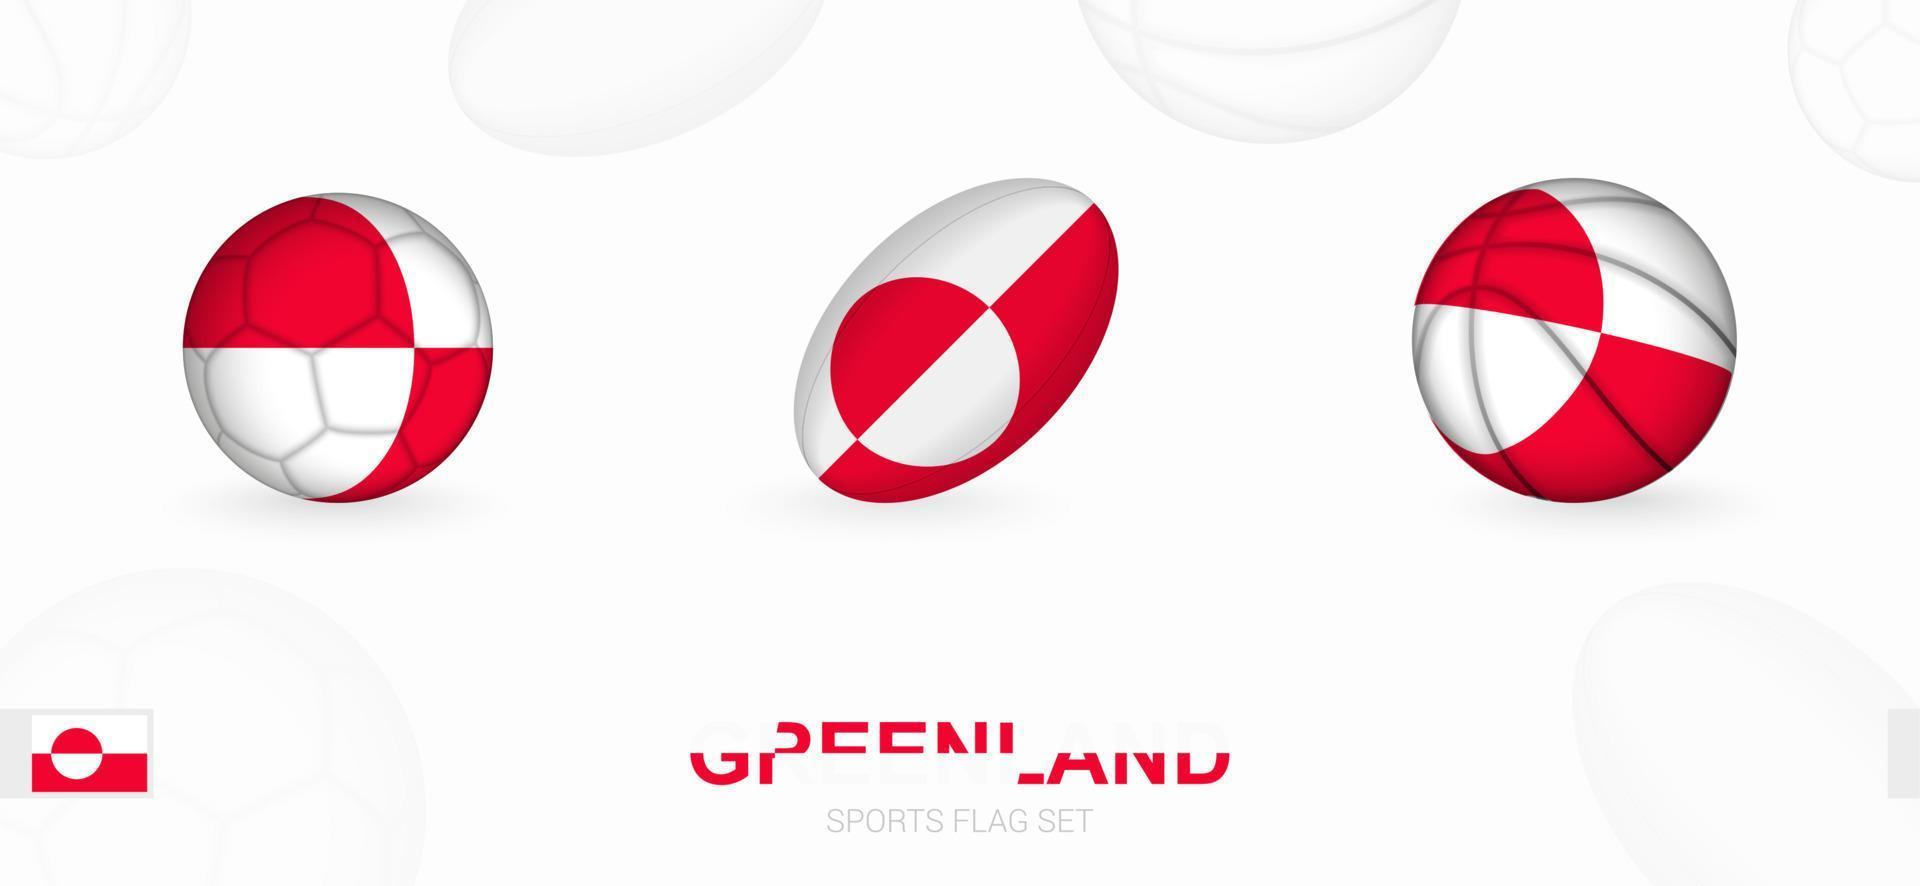 Deportes íconos para fútbol, rugby y baloncesto con el bandera de Groenlandia. vector